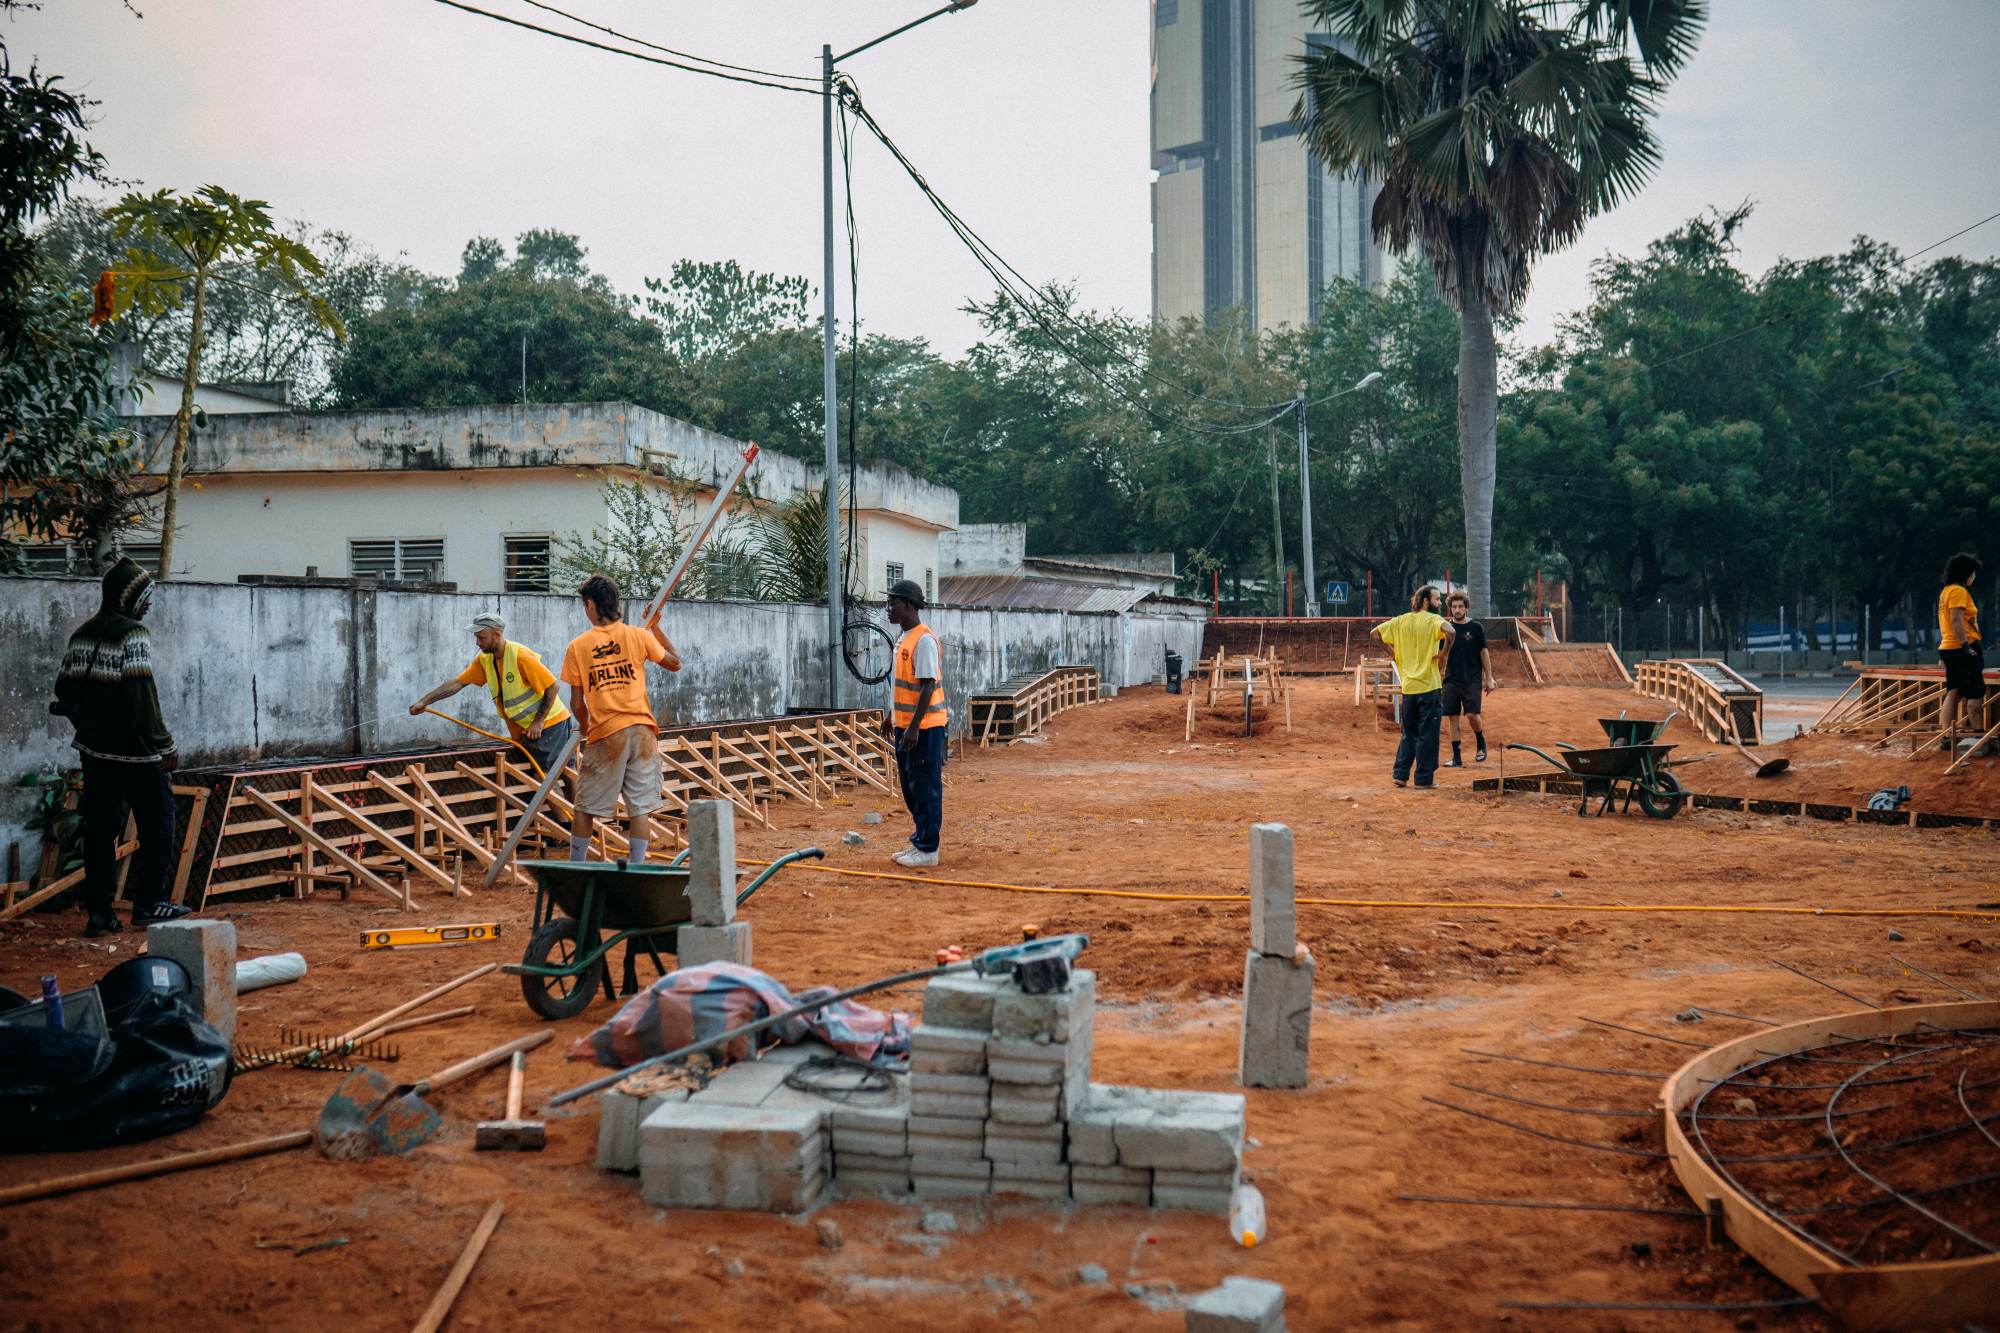 Skatepark being built in Lomé, Togo